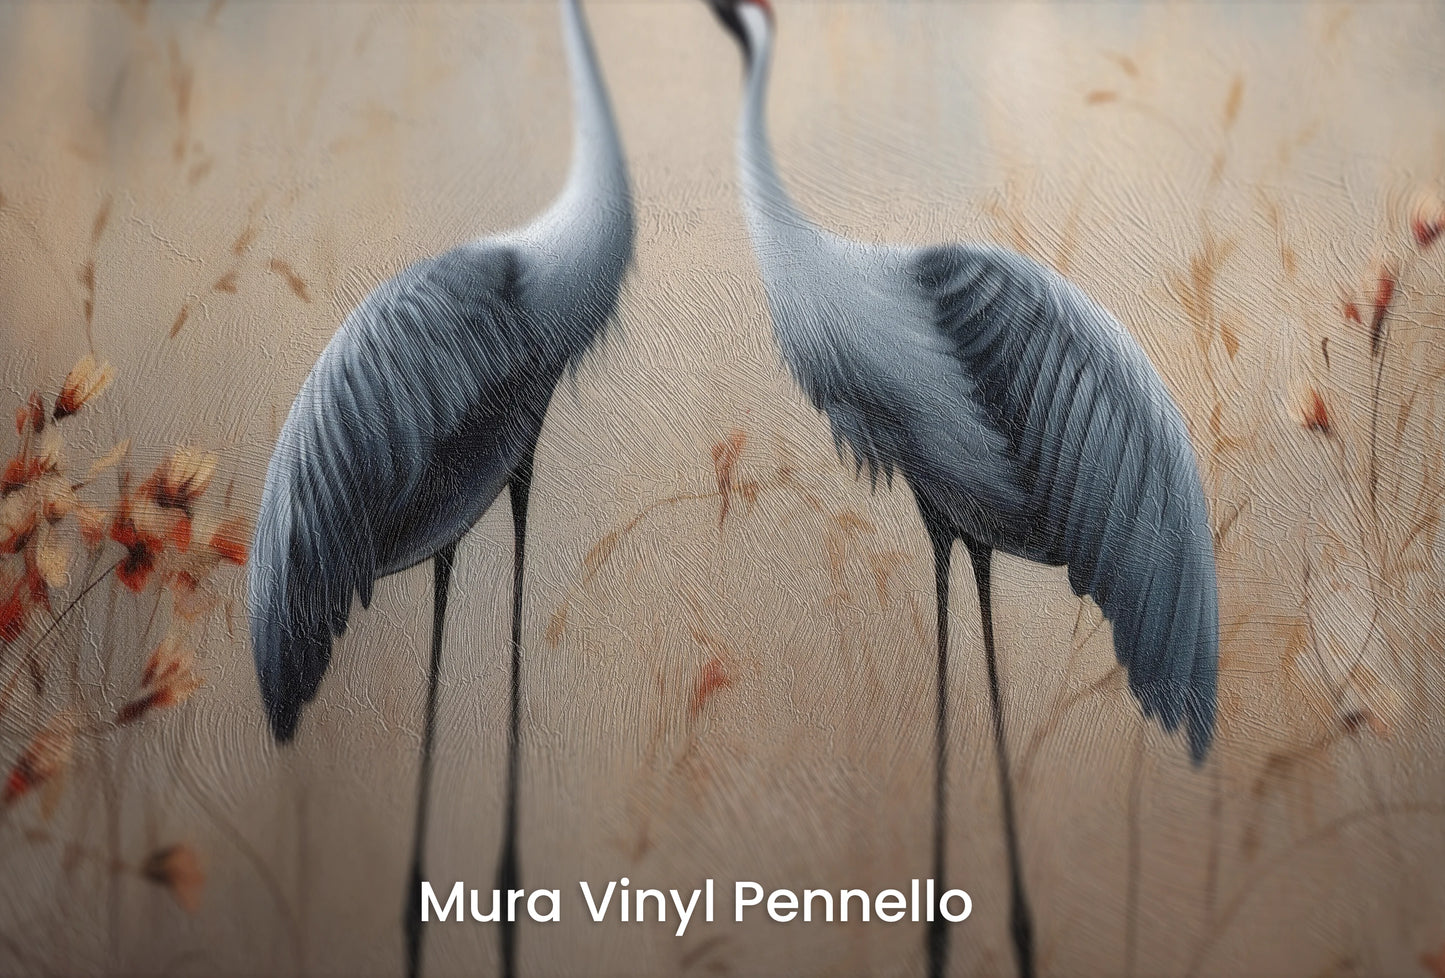 Zbliżenie na artystyczną fototapetę o nazwie Rustic Serenity na podłożu Mura Vinyl Pennello - faktura pociągnięć pędzla malarskiego.